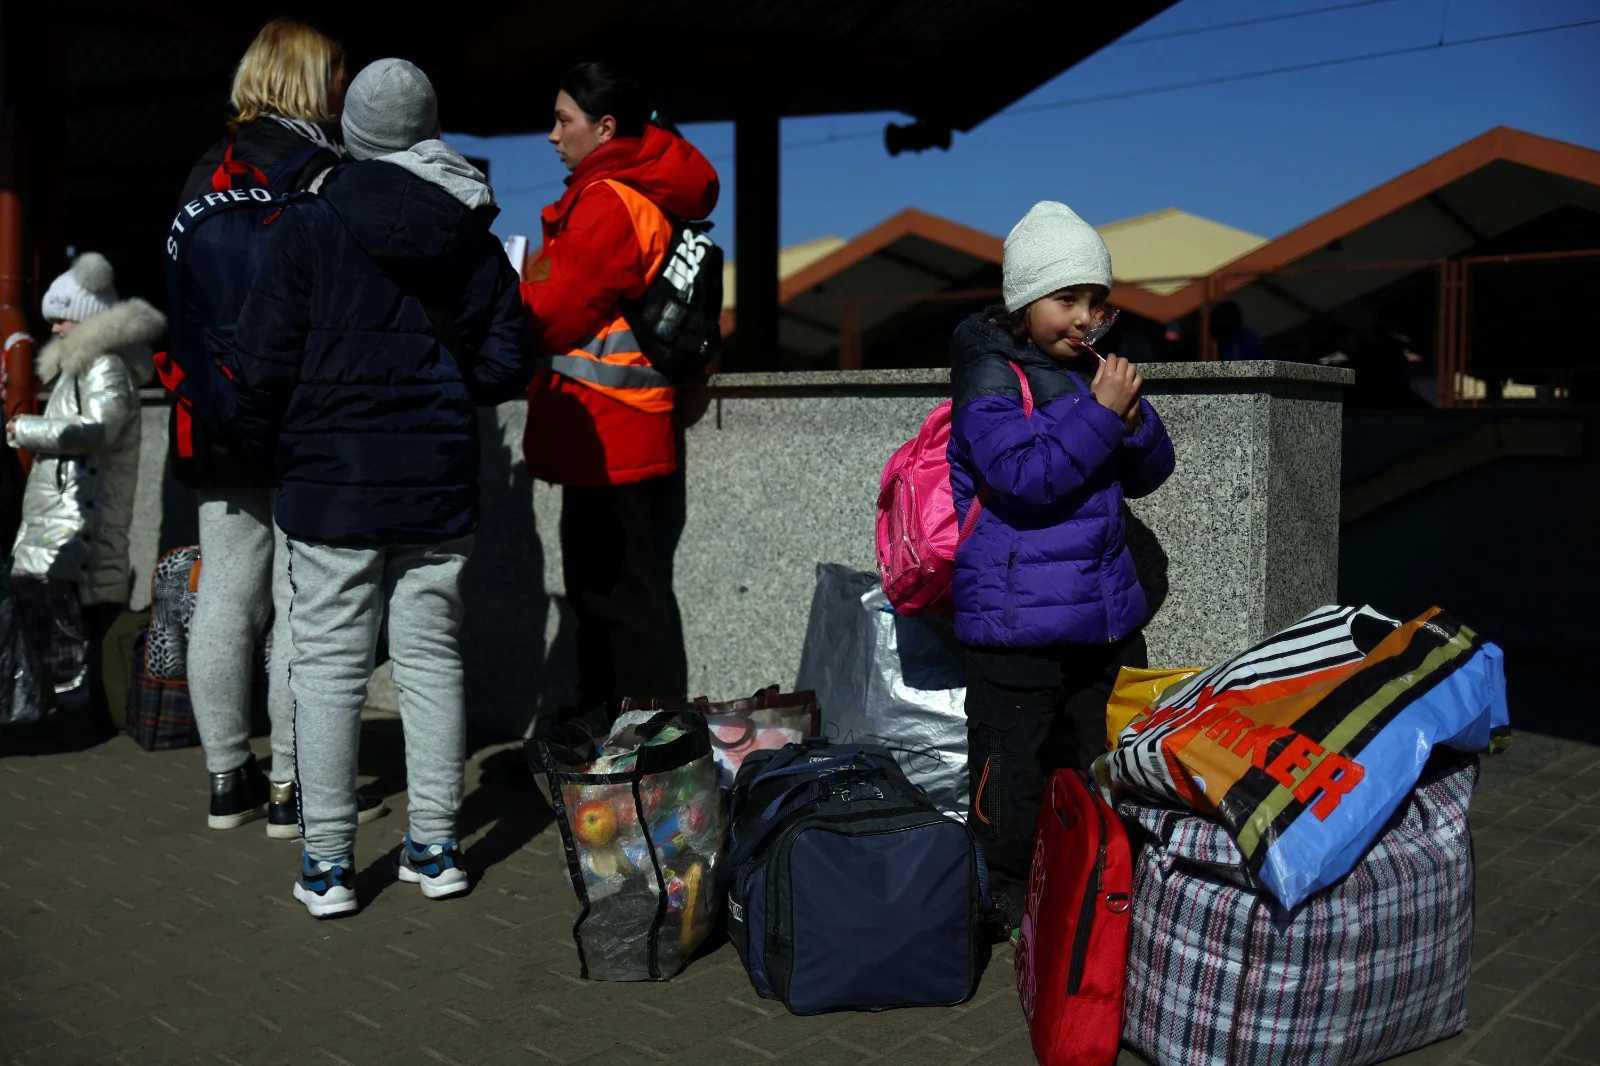 פליטים אוקראינים ממתינים על הרציף לאחר שהגיעו מאודסה לפשמיסל שבפולין